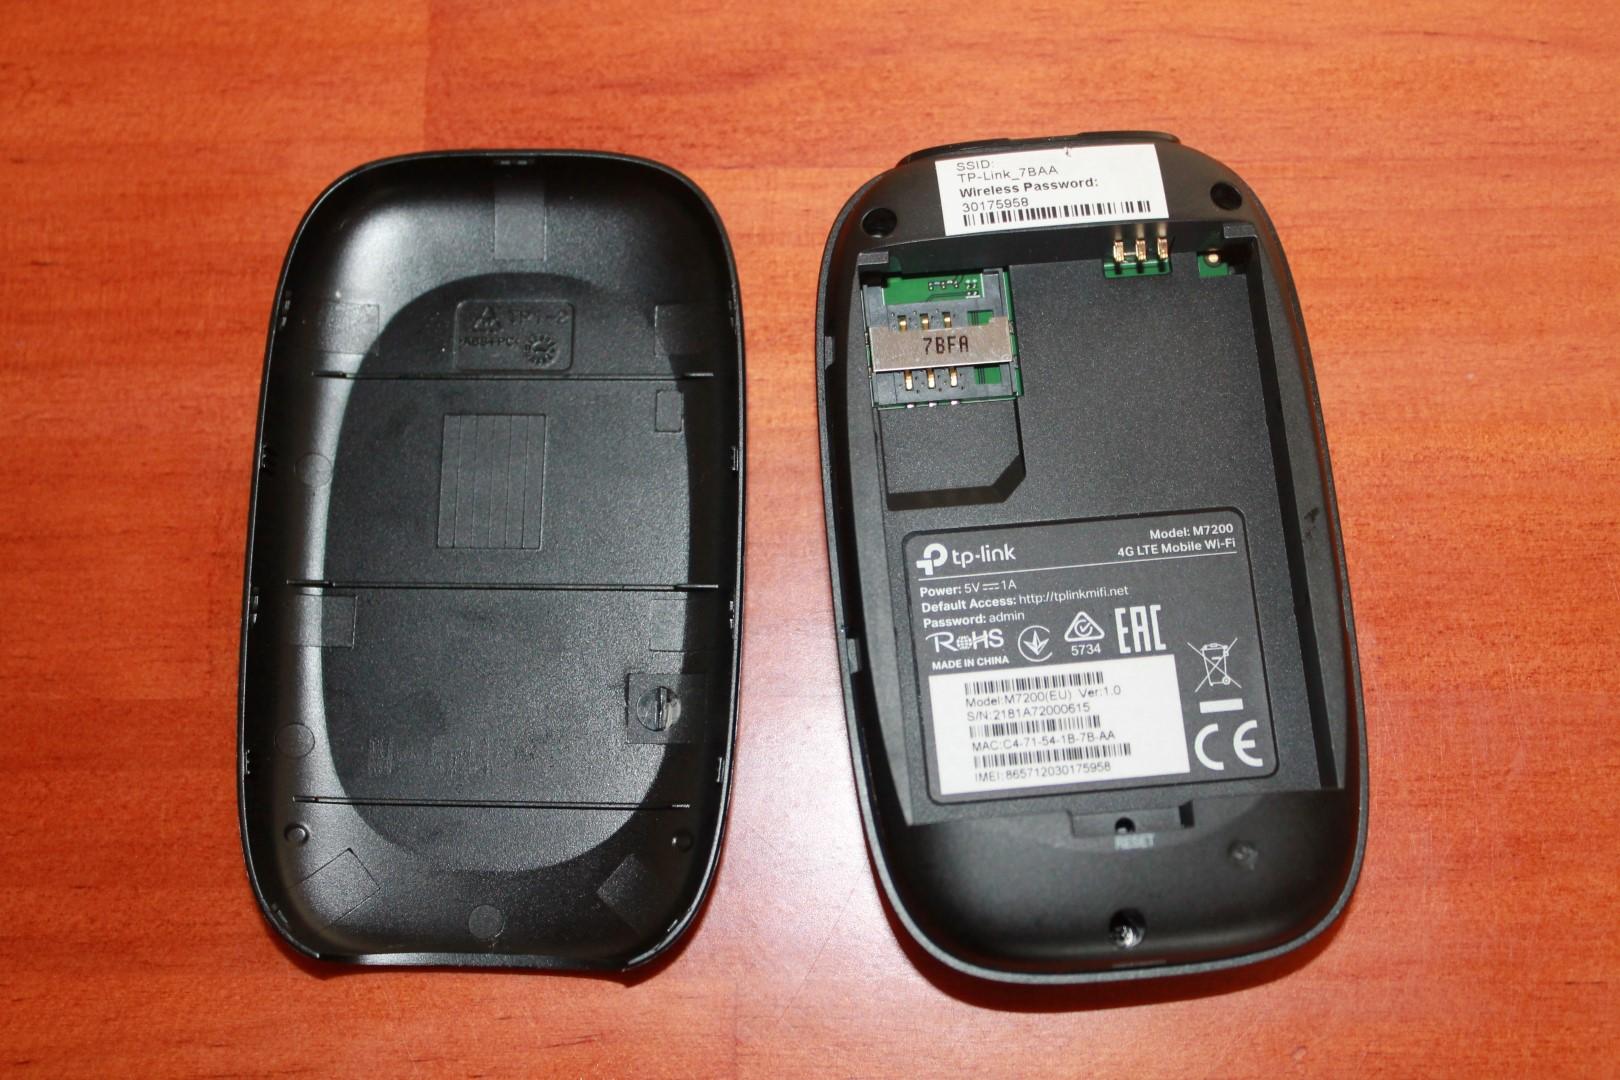 Ubicación de la batería, tarjeta SIM y botón de reset del TP-Link M7200